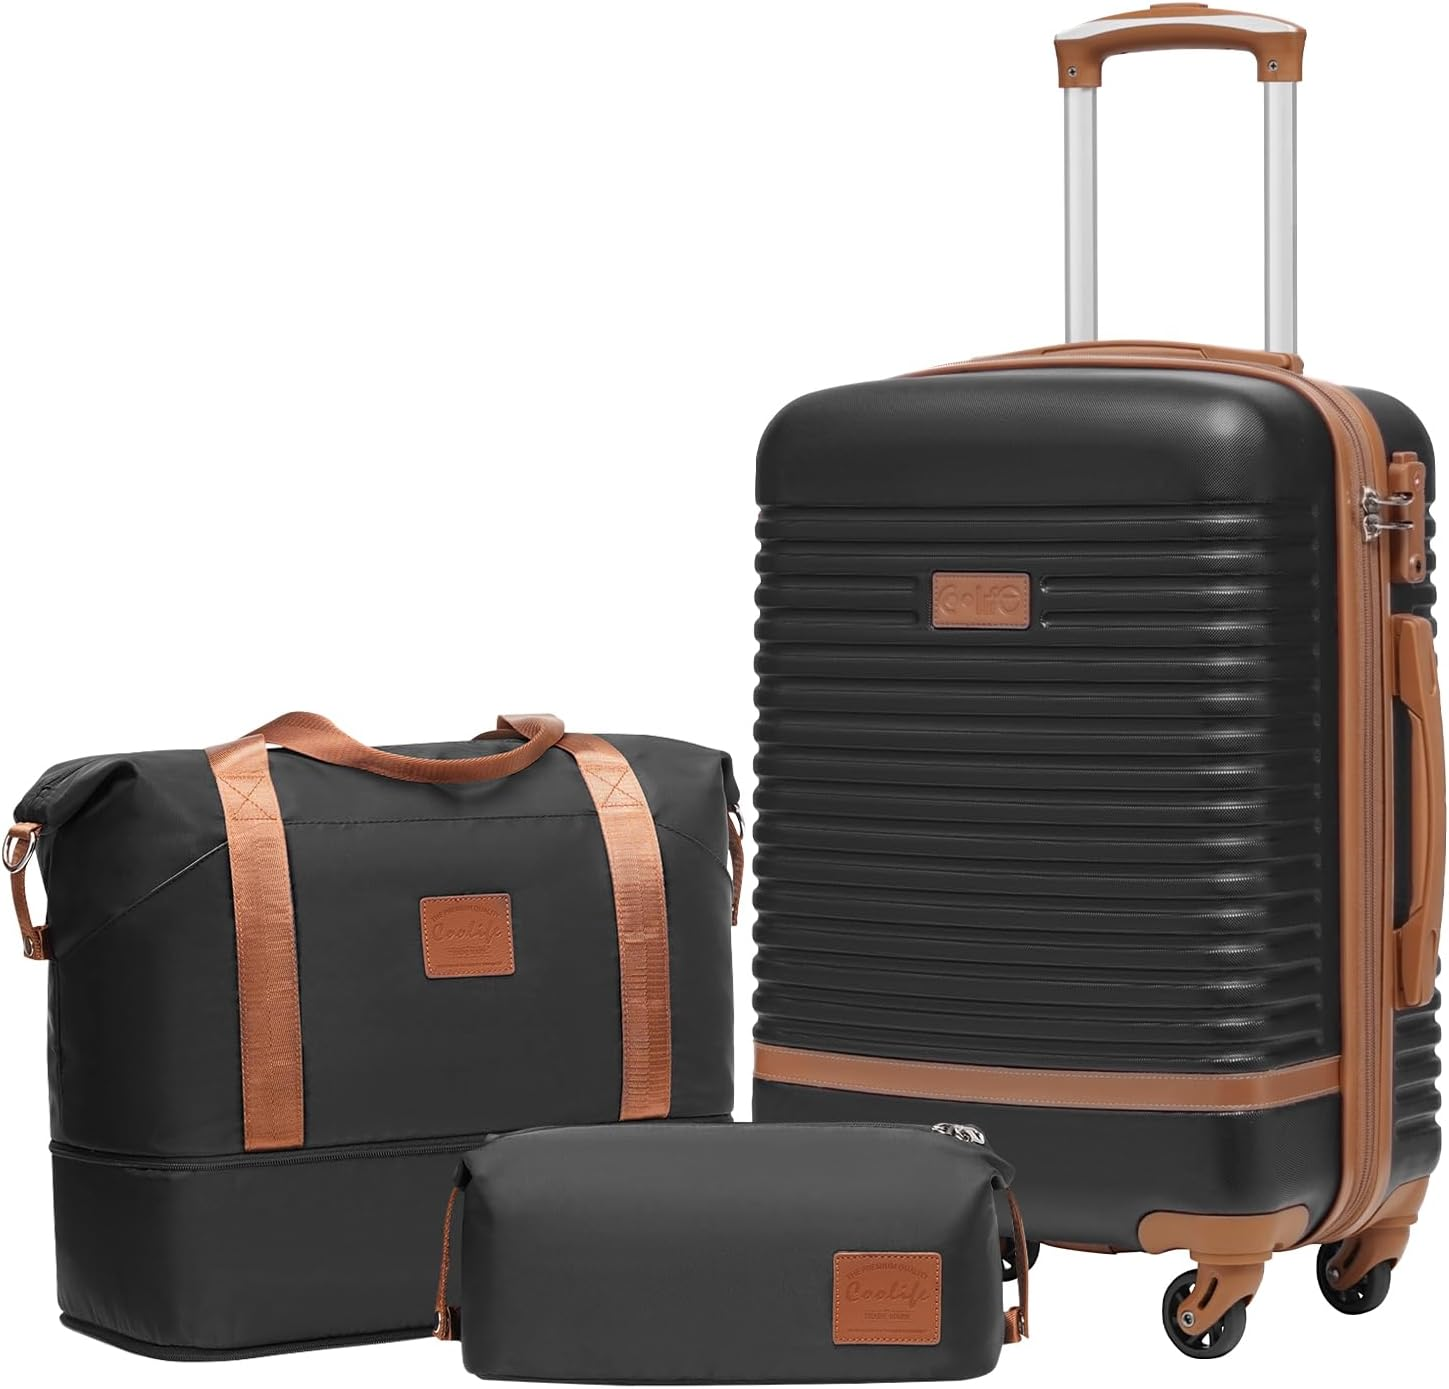 Coolife Suitcase Set 3 Piece Luggage Set Carry On Travel Luggage TSA Lock Spinner Wheels Hardshell Lightweight Luggage Set( 3 piece set (DB/TB/20)) $89.99